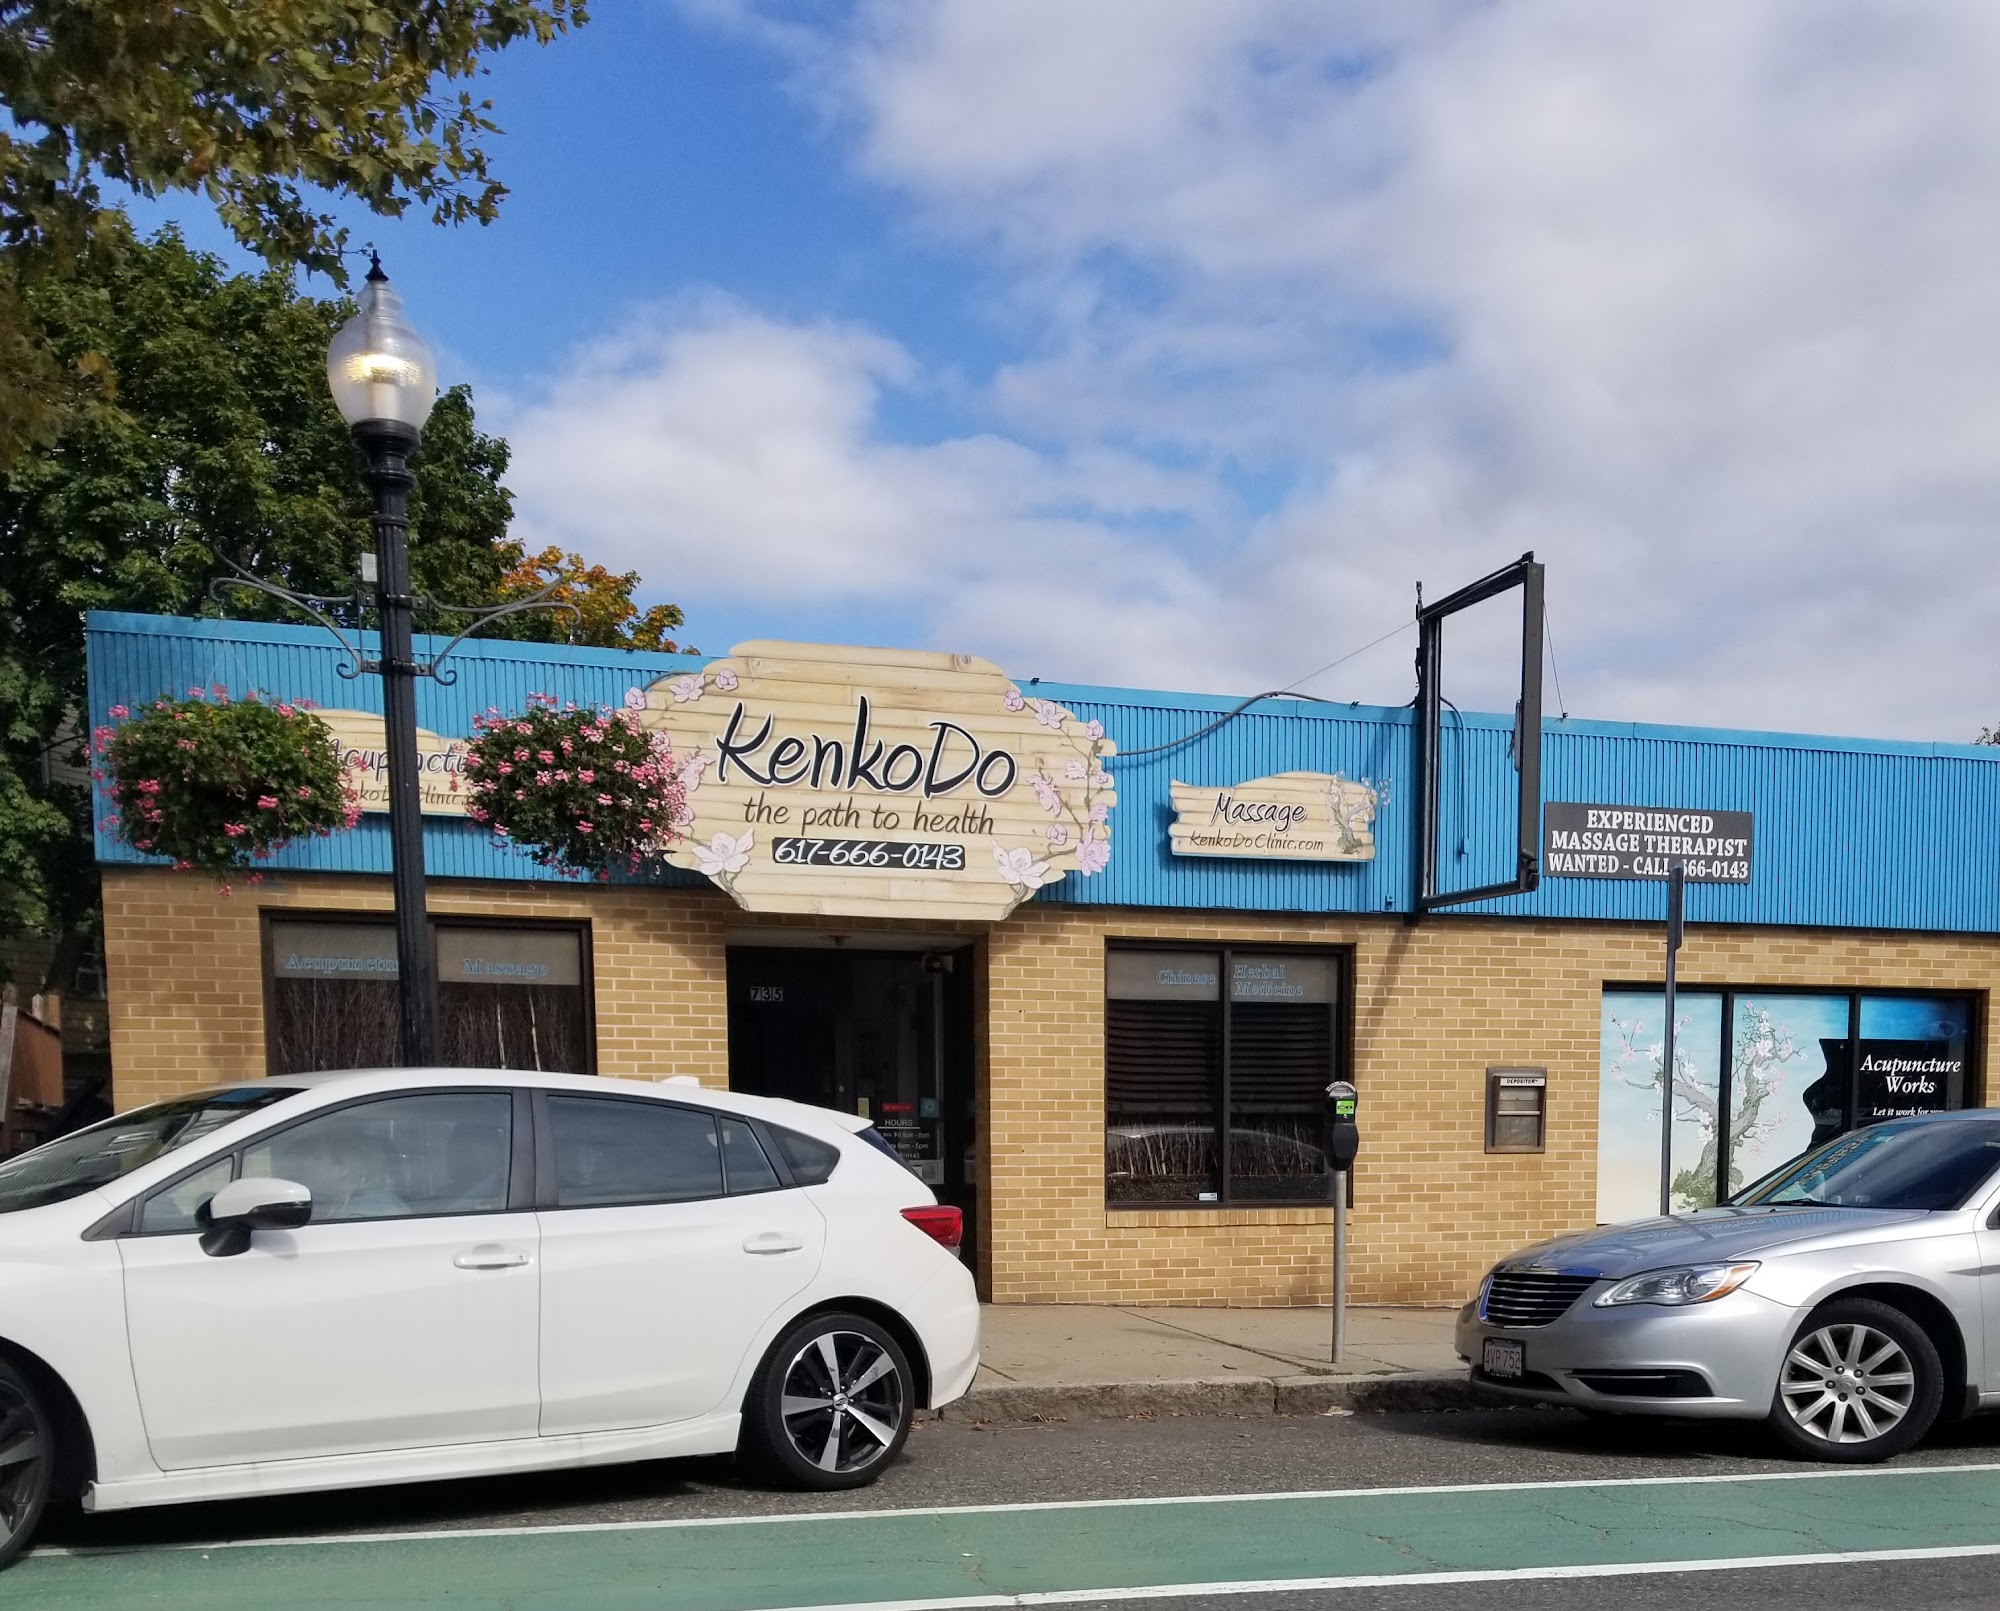 KenkoDo Clinic